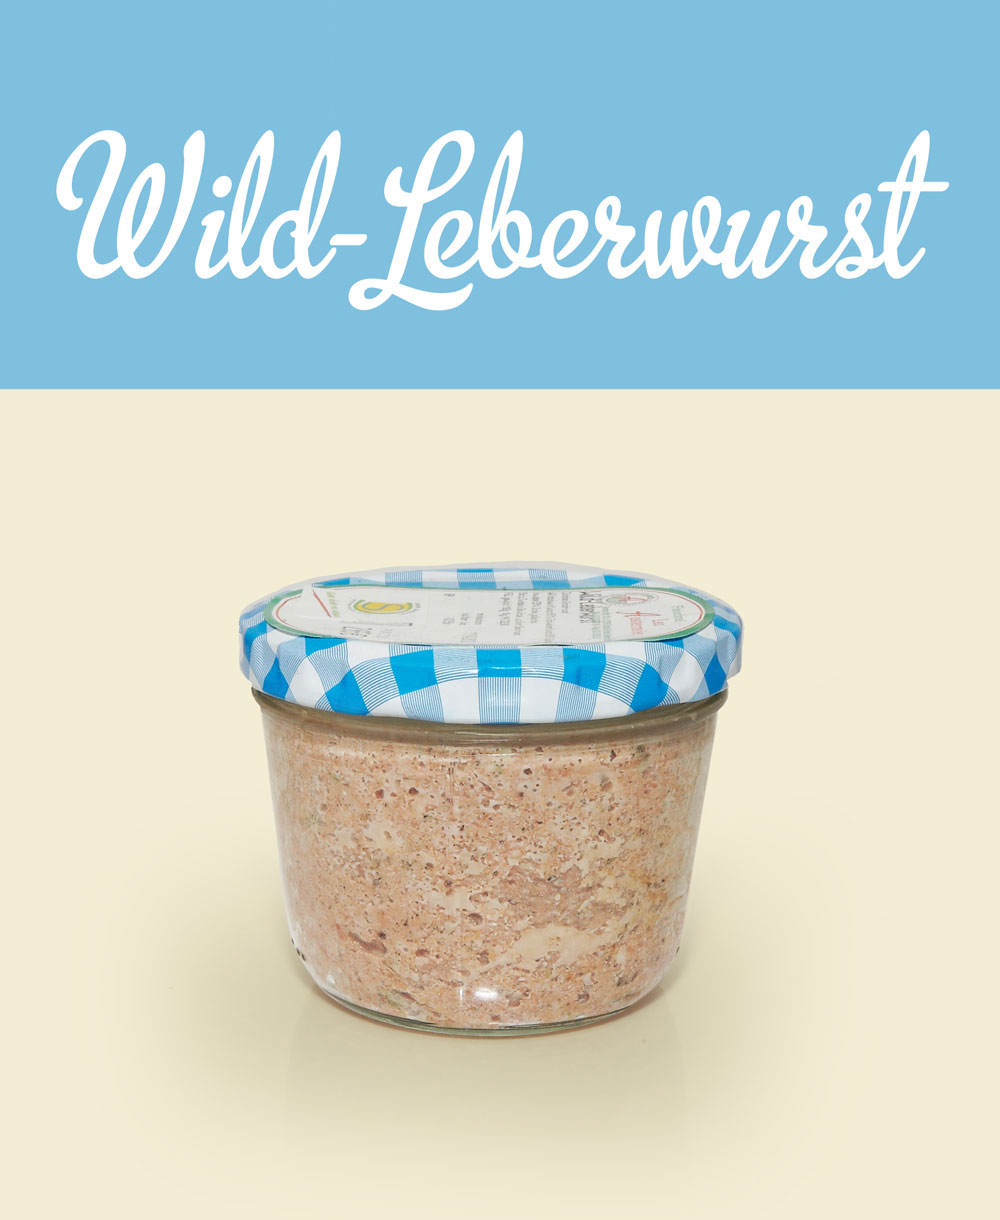 Wildleberwurst